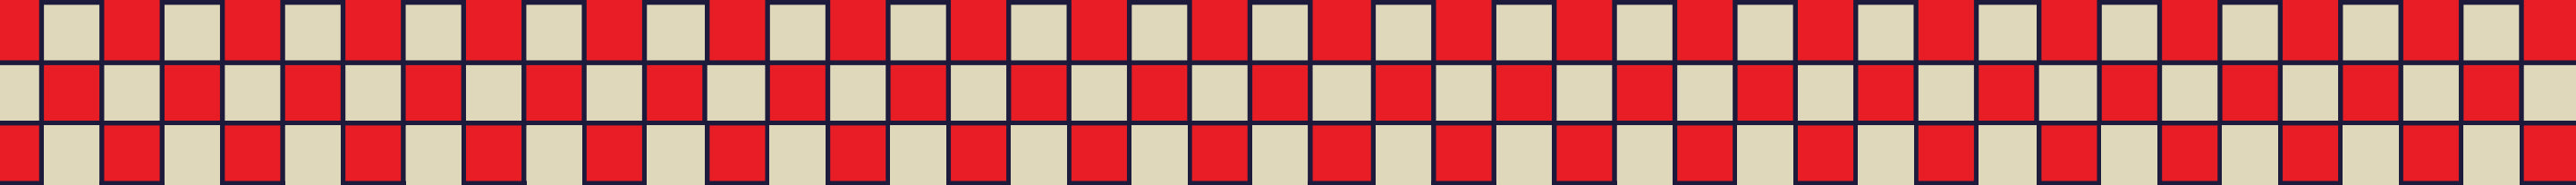 Checker pattern